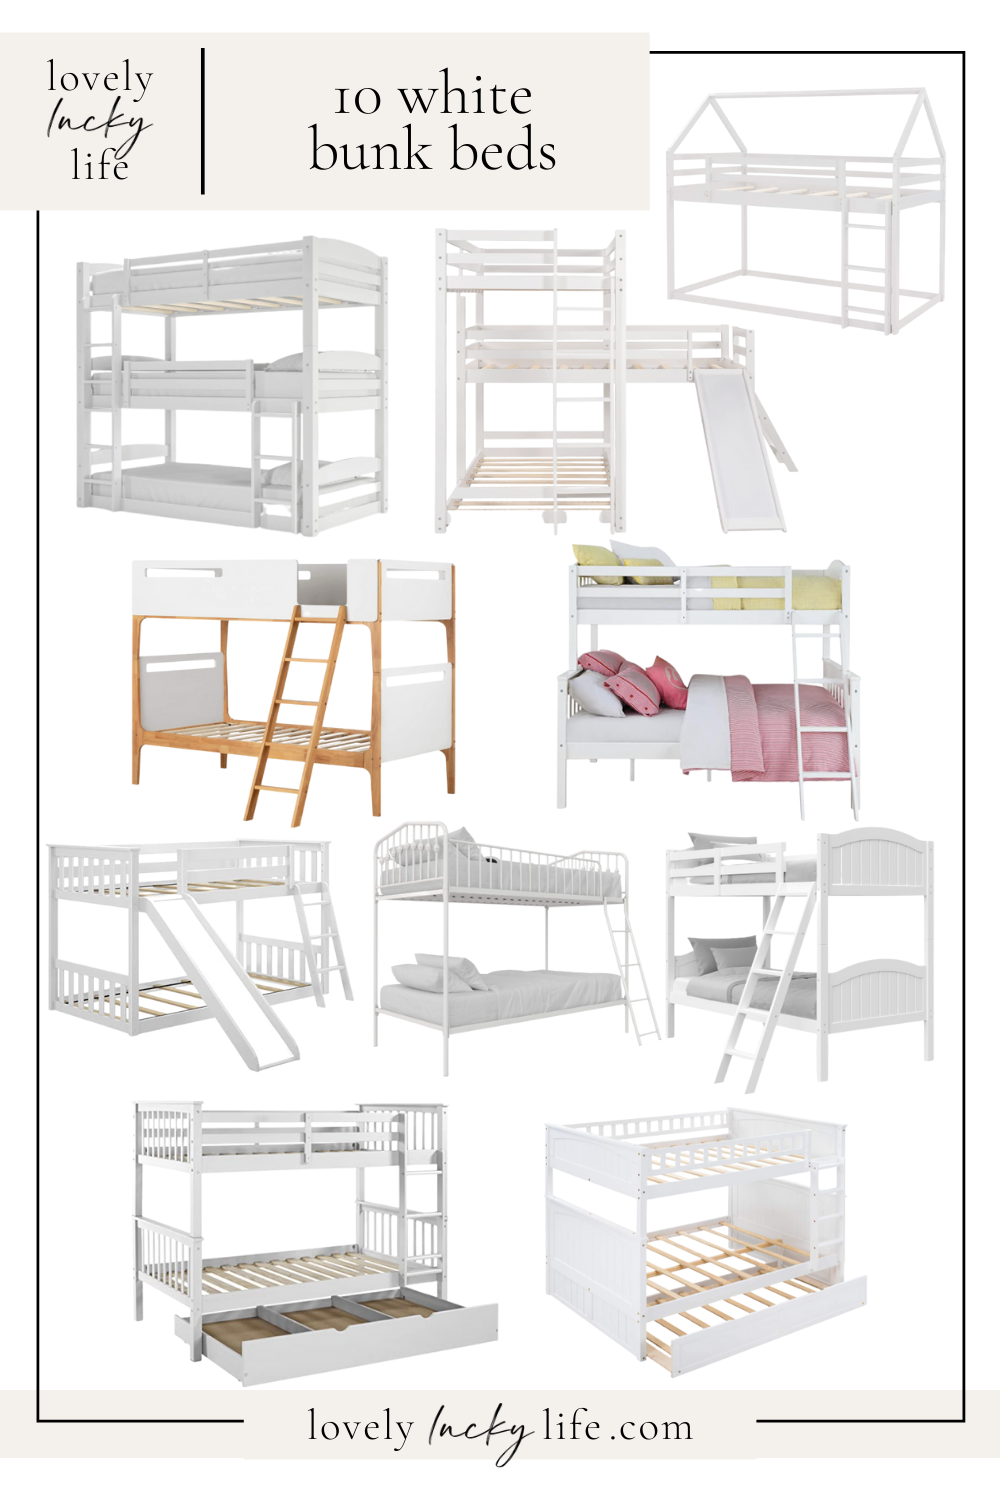 10 white bunks beds on LovelyLuckyLife.com